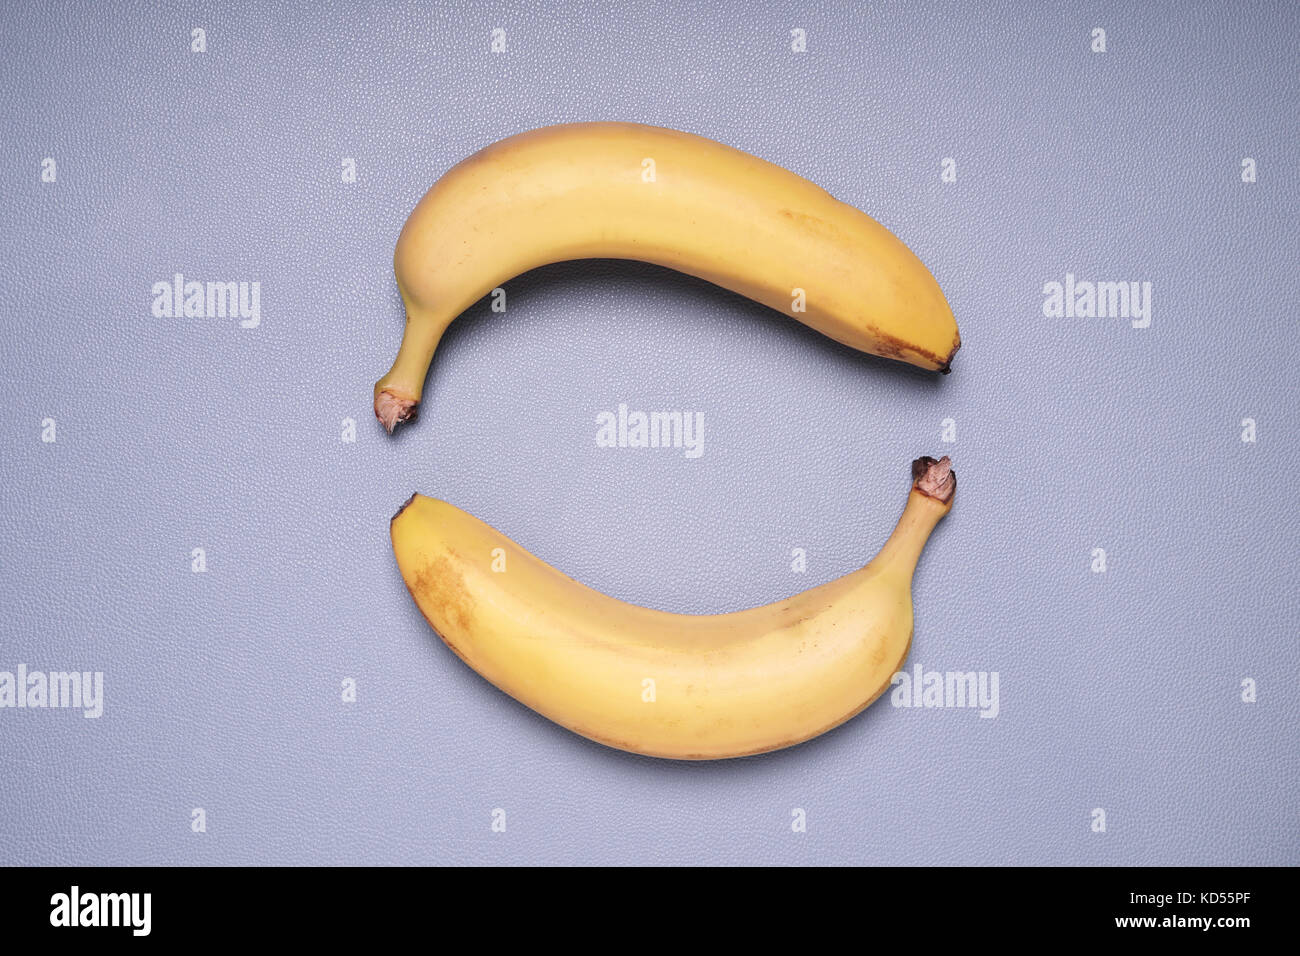 two bananas forming circle shape Stock Photo